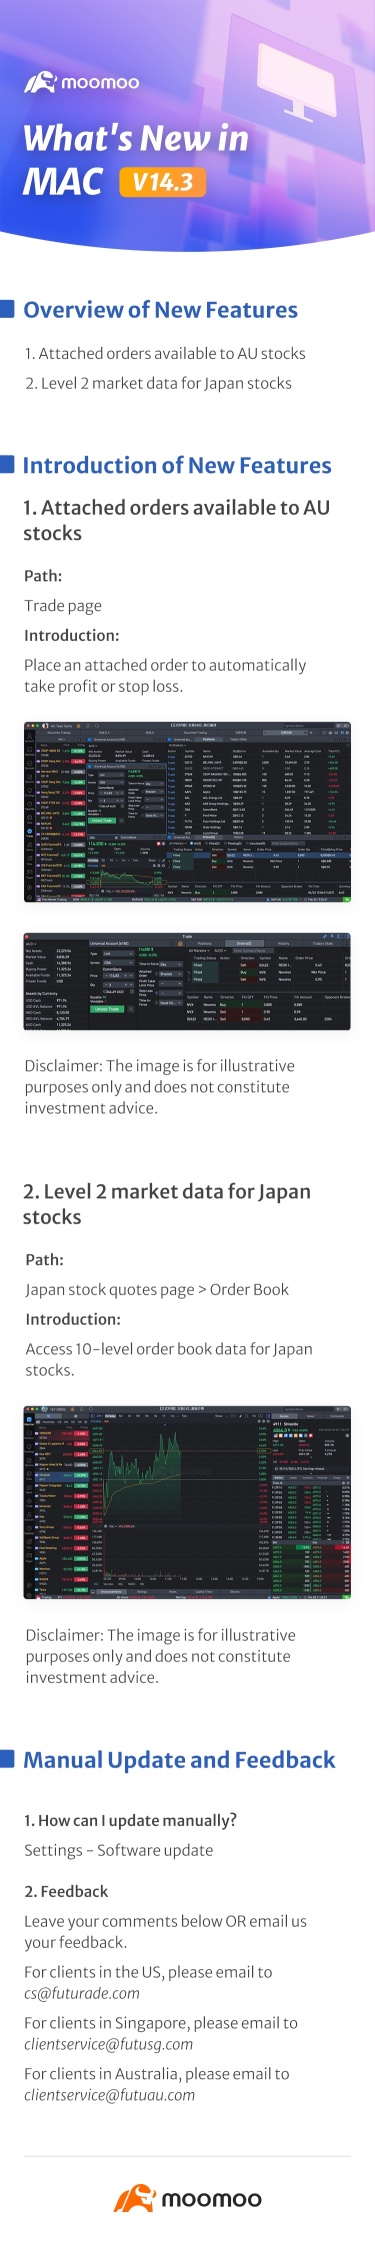 新增内容：Mac v14.3 中日本股票的 LV2 市场数据